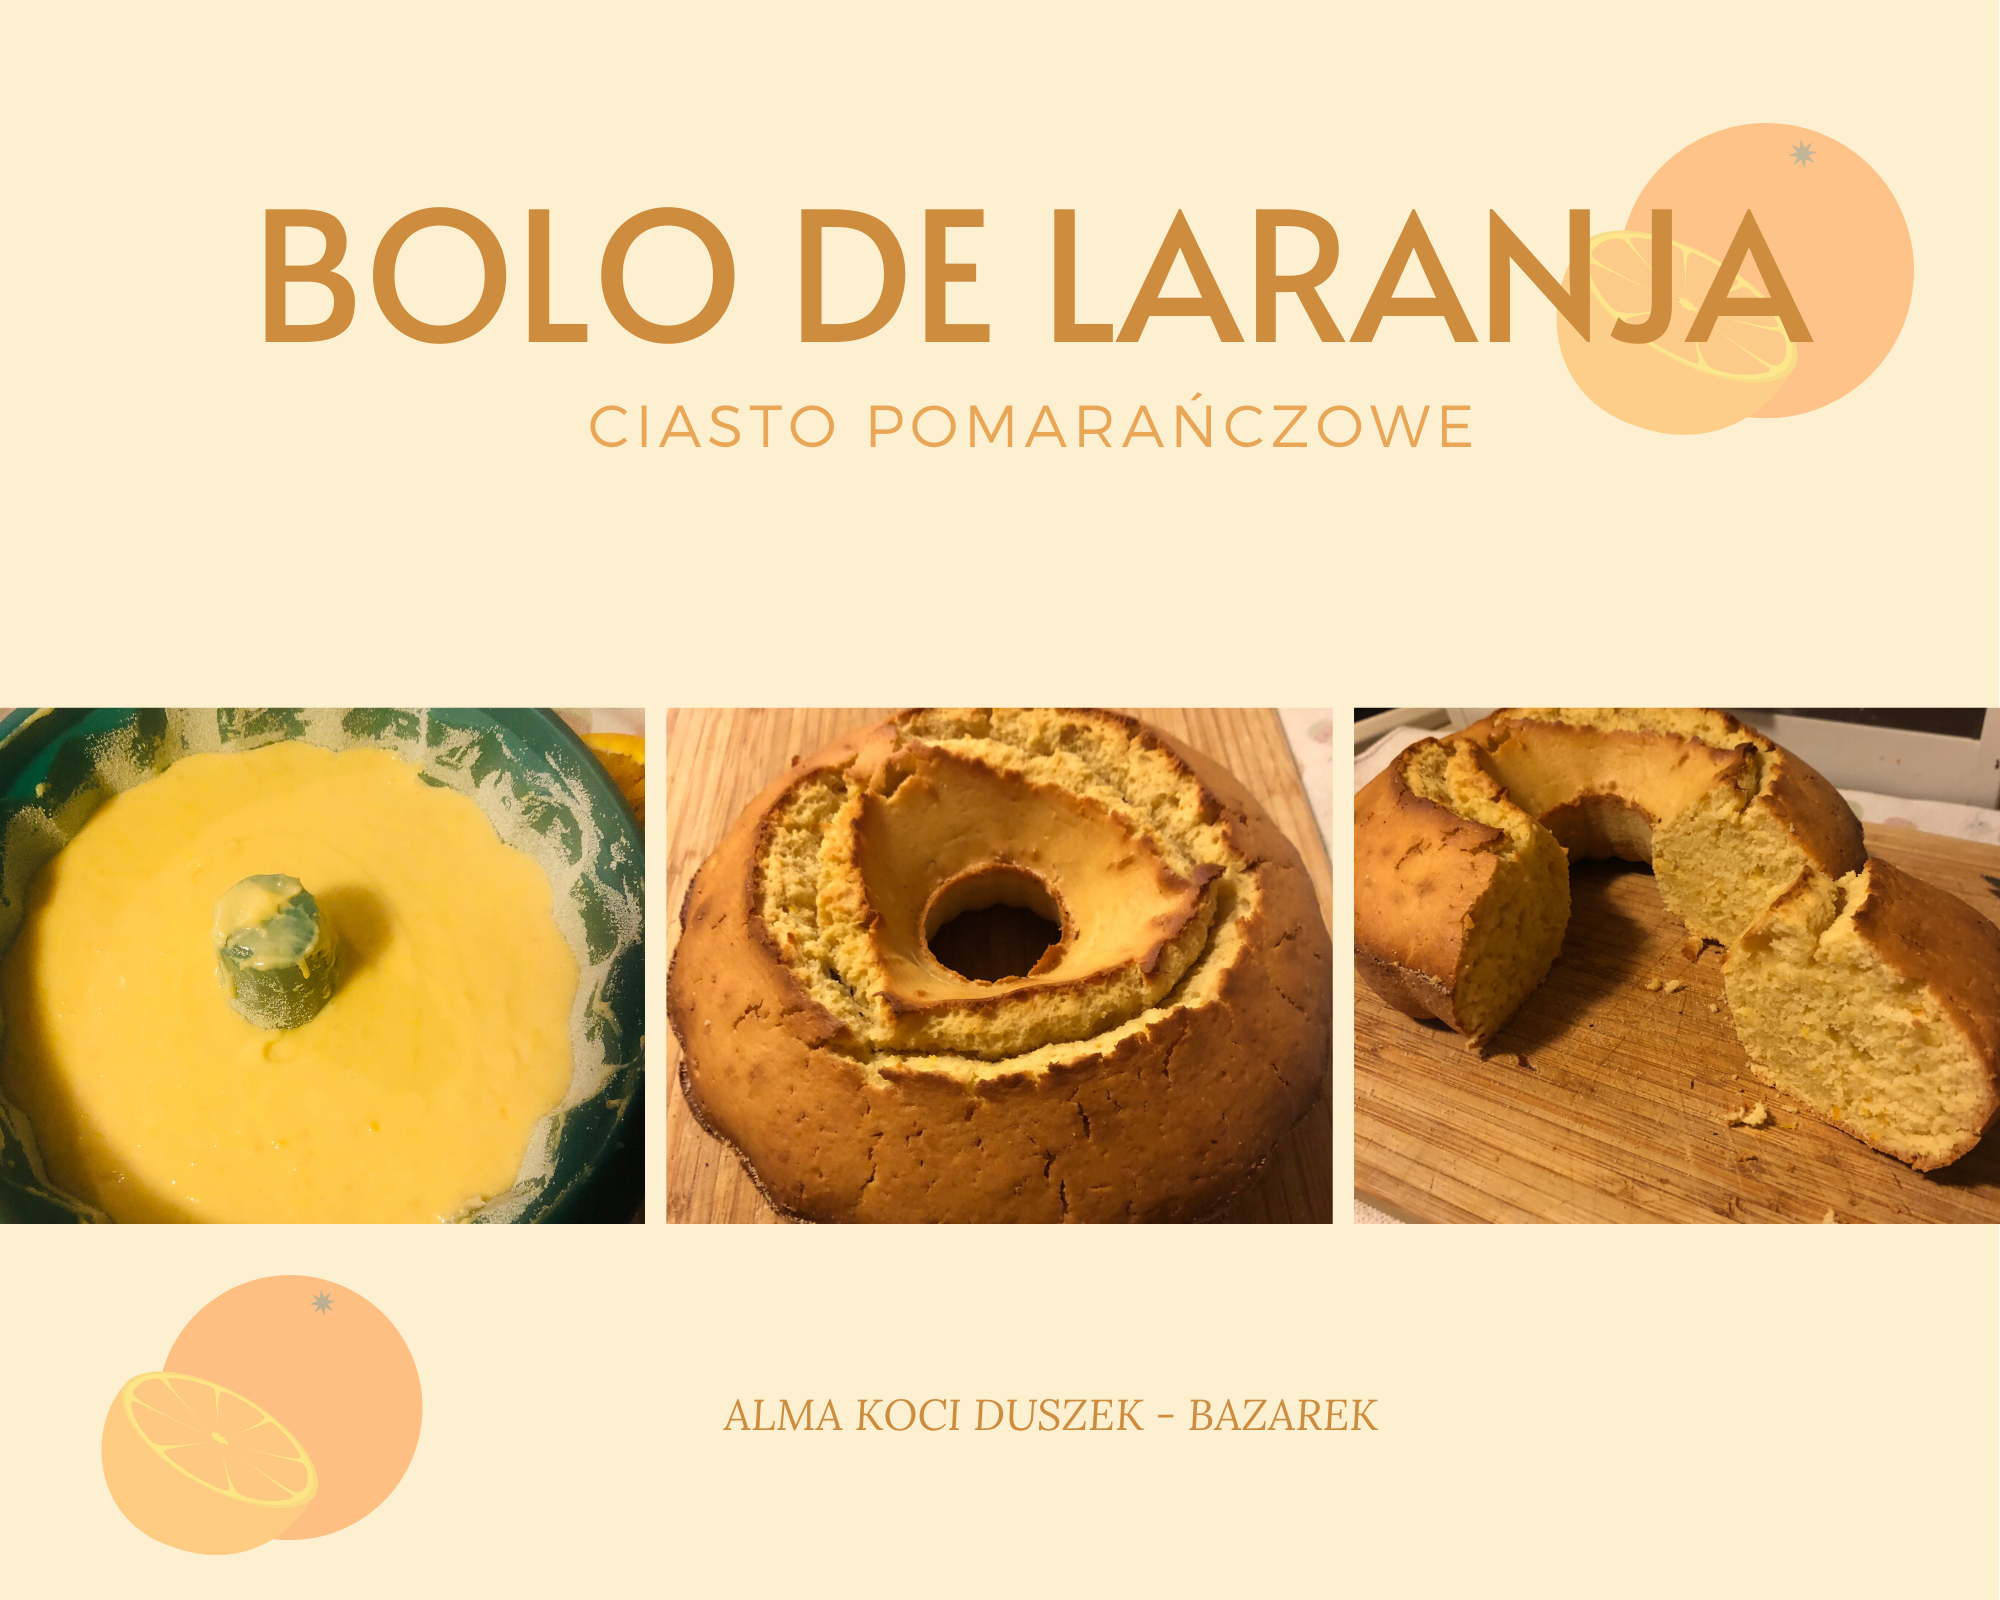 Bolo de Laranja - portugalskie ciasto pomarańczowe